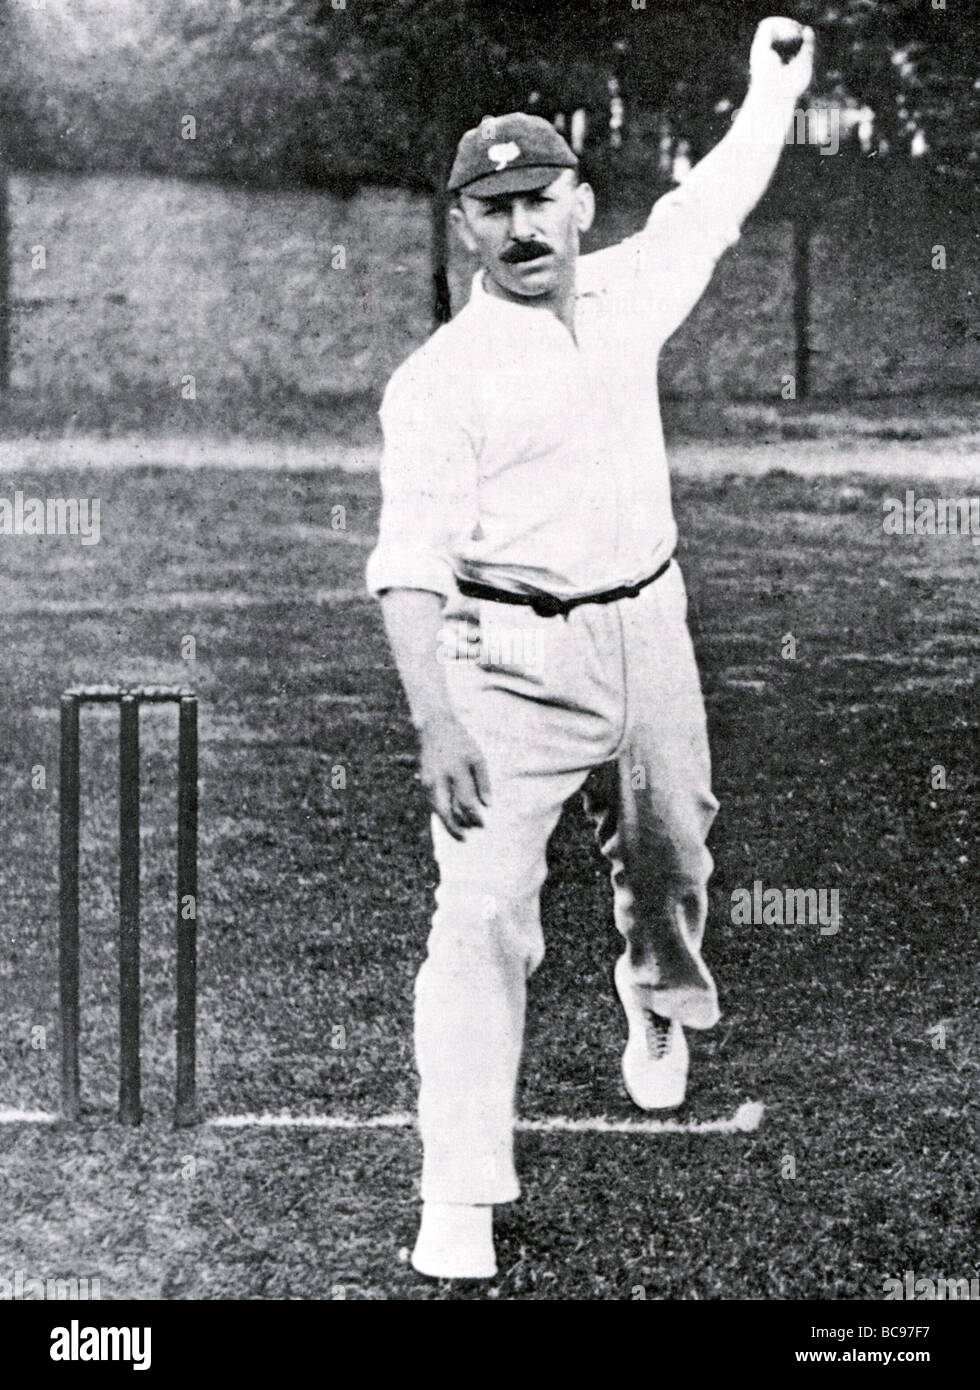 GEORGE HERBERT HIRST - Englischtest Cricketer (1871-1954) Stockfoto